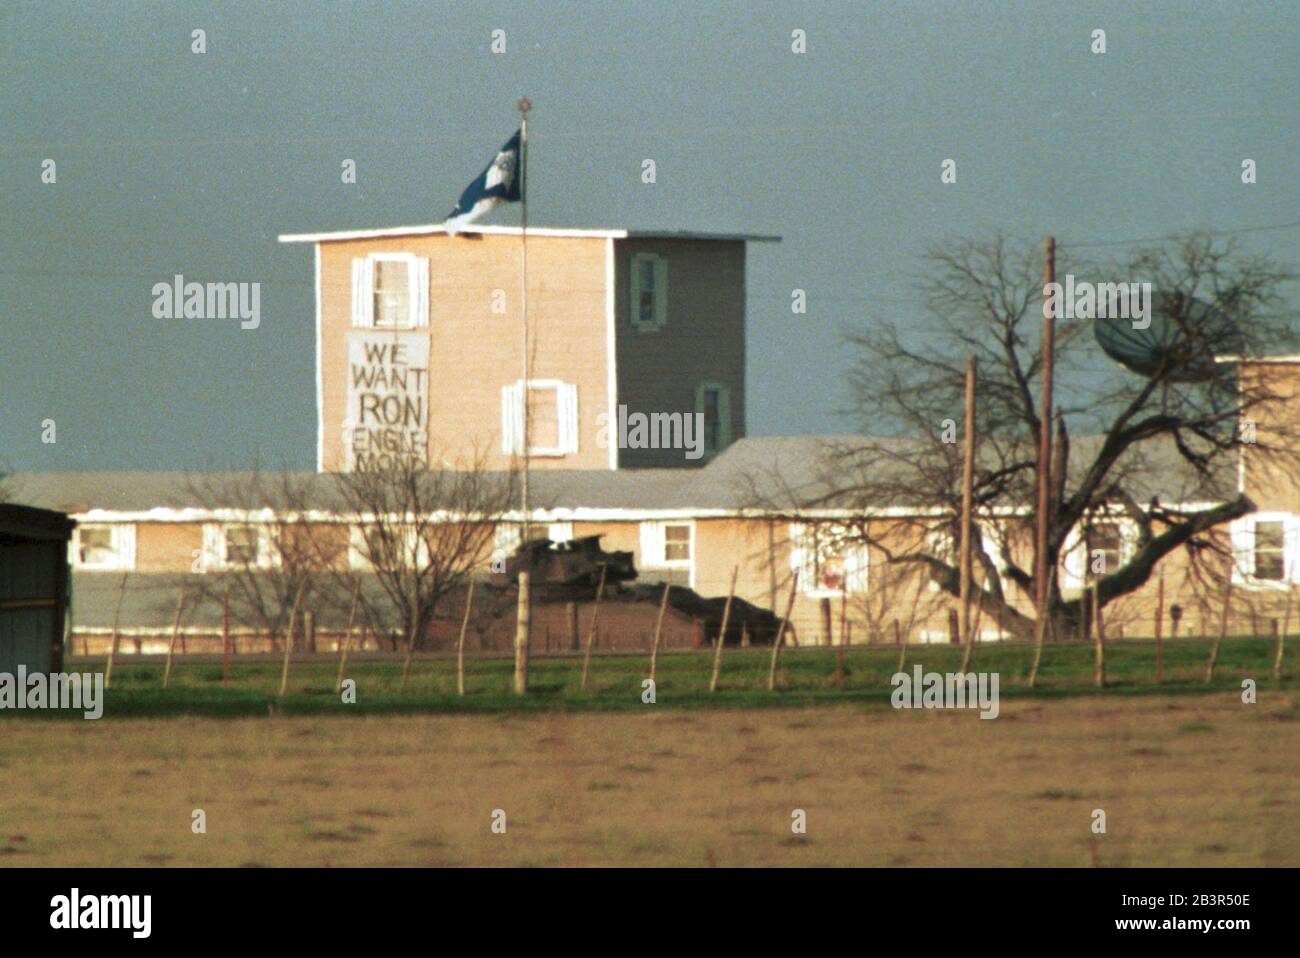 Waco Texas USA, 1993. März: Ein Panzer der US-Armee fährt während der 51-tägigen Konfrontation zwischen Sektenmitgliedern und Strafverfolgungsbehörden des Bundes am Branch Davidian-Gelände in der Nähe von Waco, Texas, vorbei. ©Bob Daemmrich Stockfoto